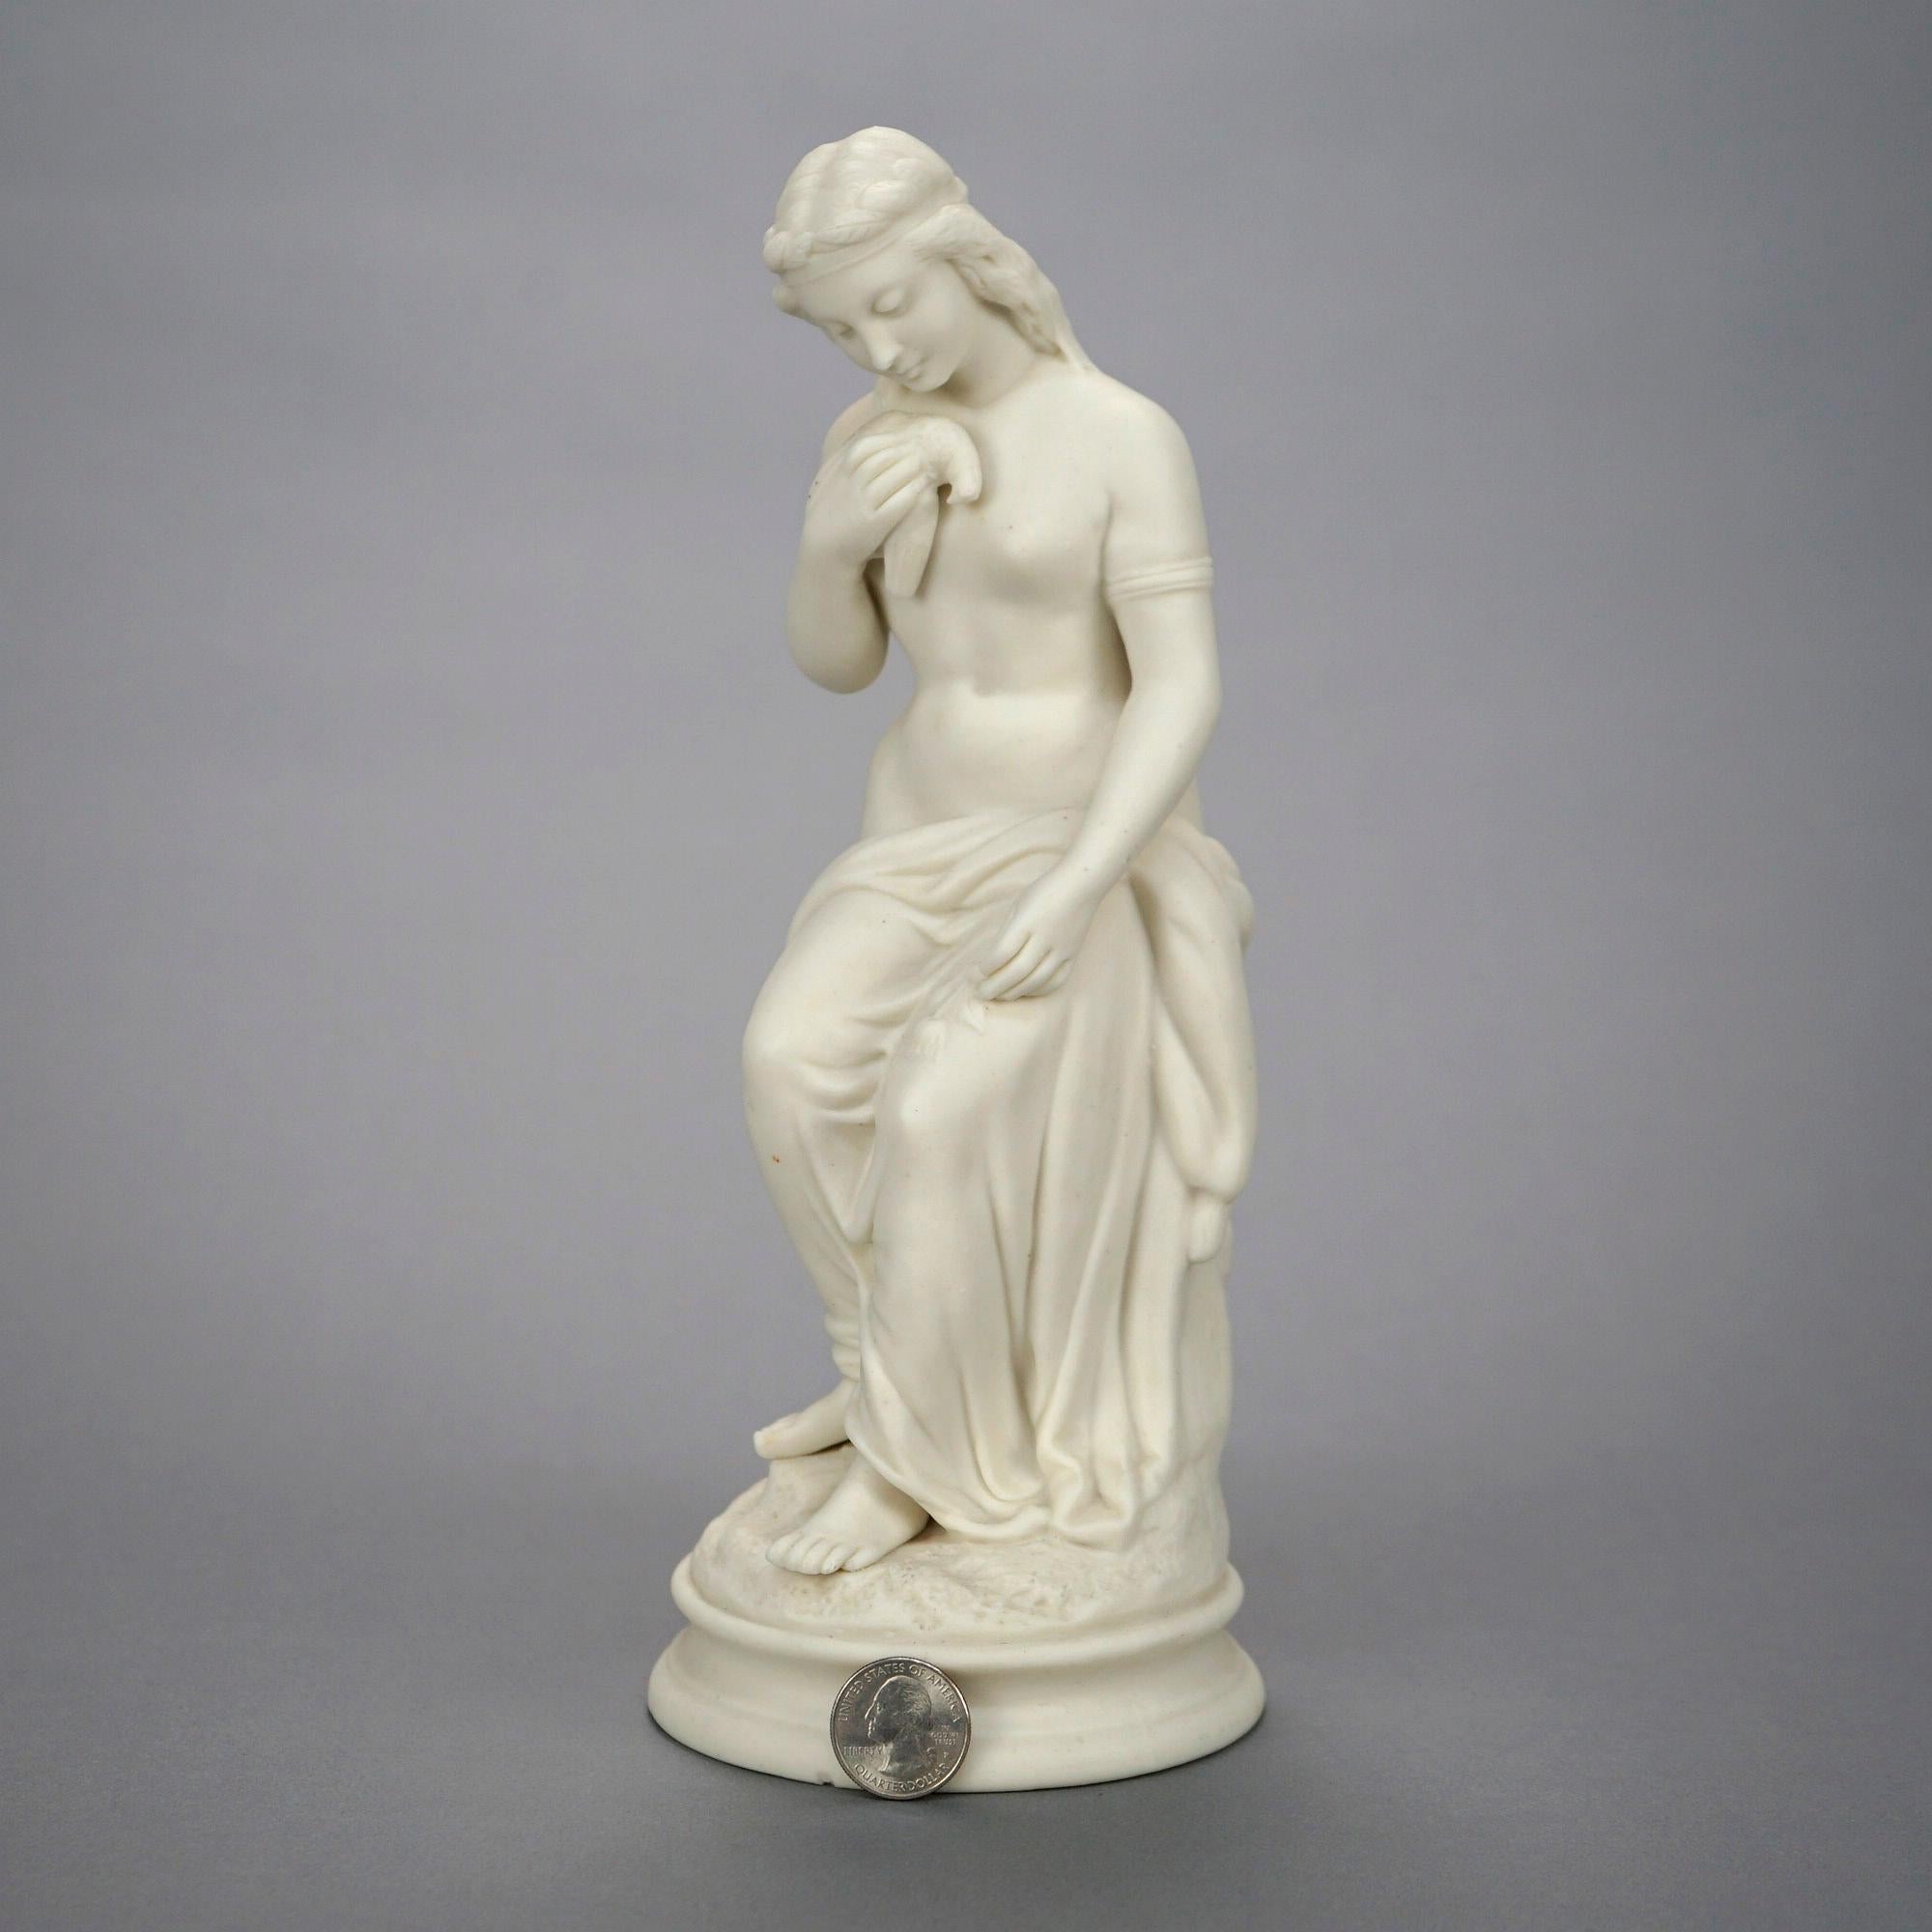 Statue ancienne en porcelaine de Paros offrant un portrait d'une femme classique assise et d'une colombe, 19e siècle

Dimensions : 11''H x 4.25''W x 4.25''D.